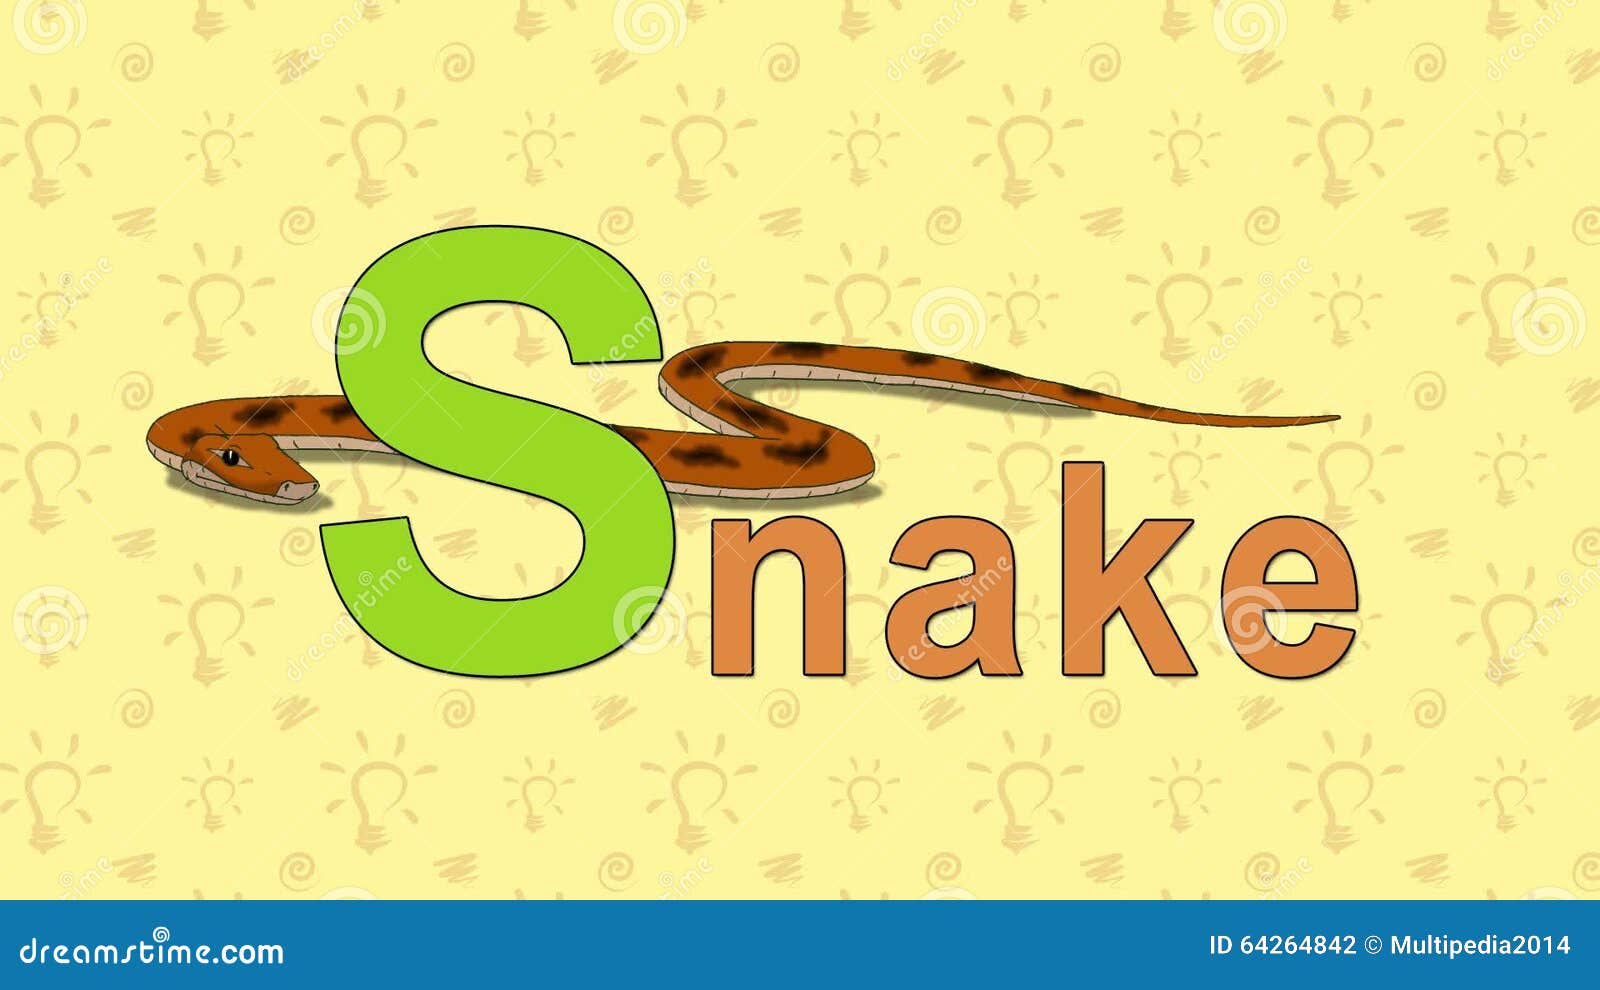 Como é serpente em inglês?